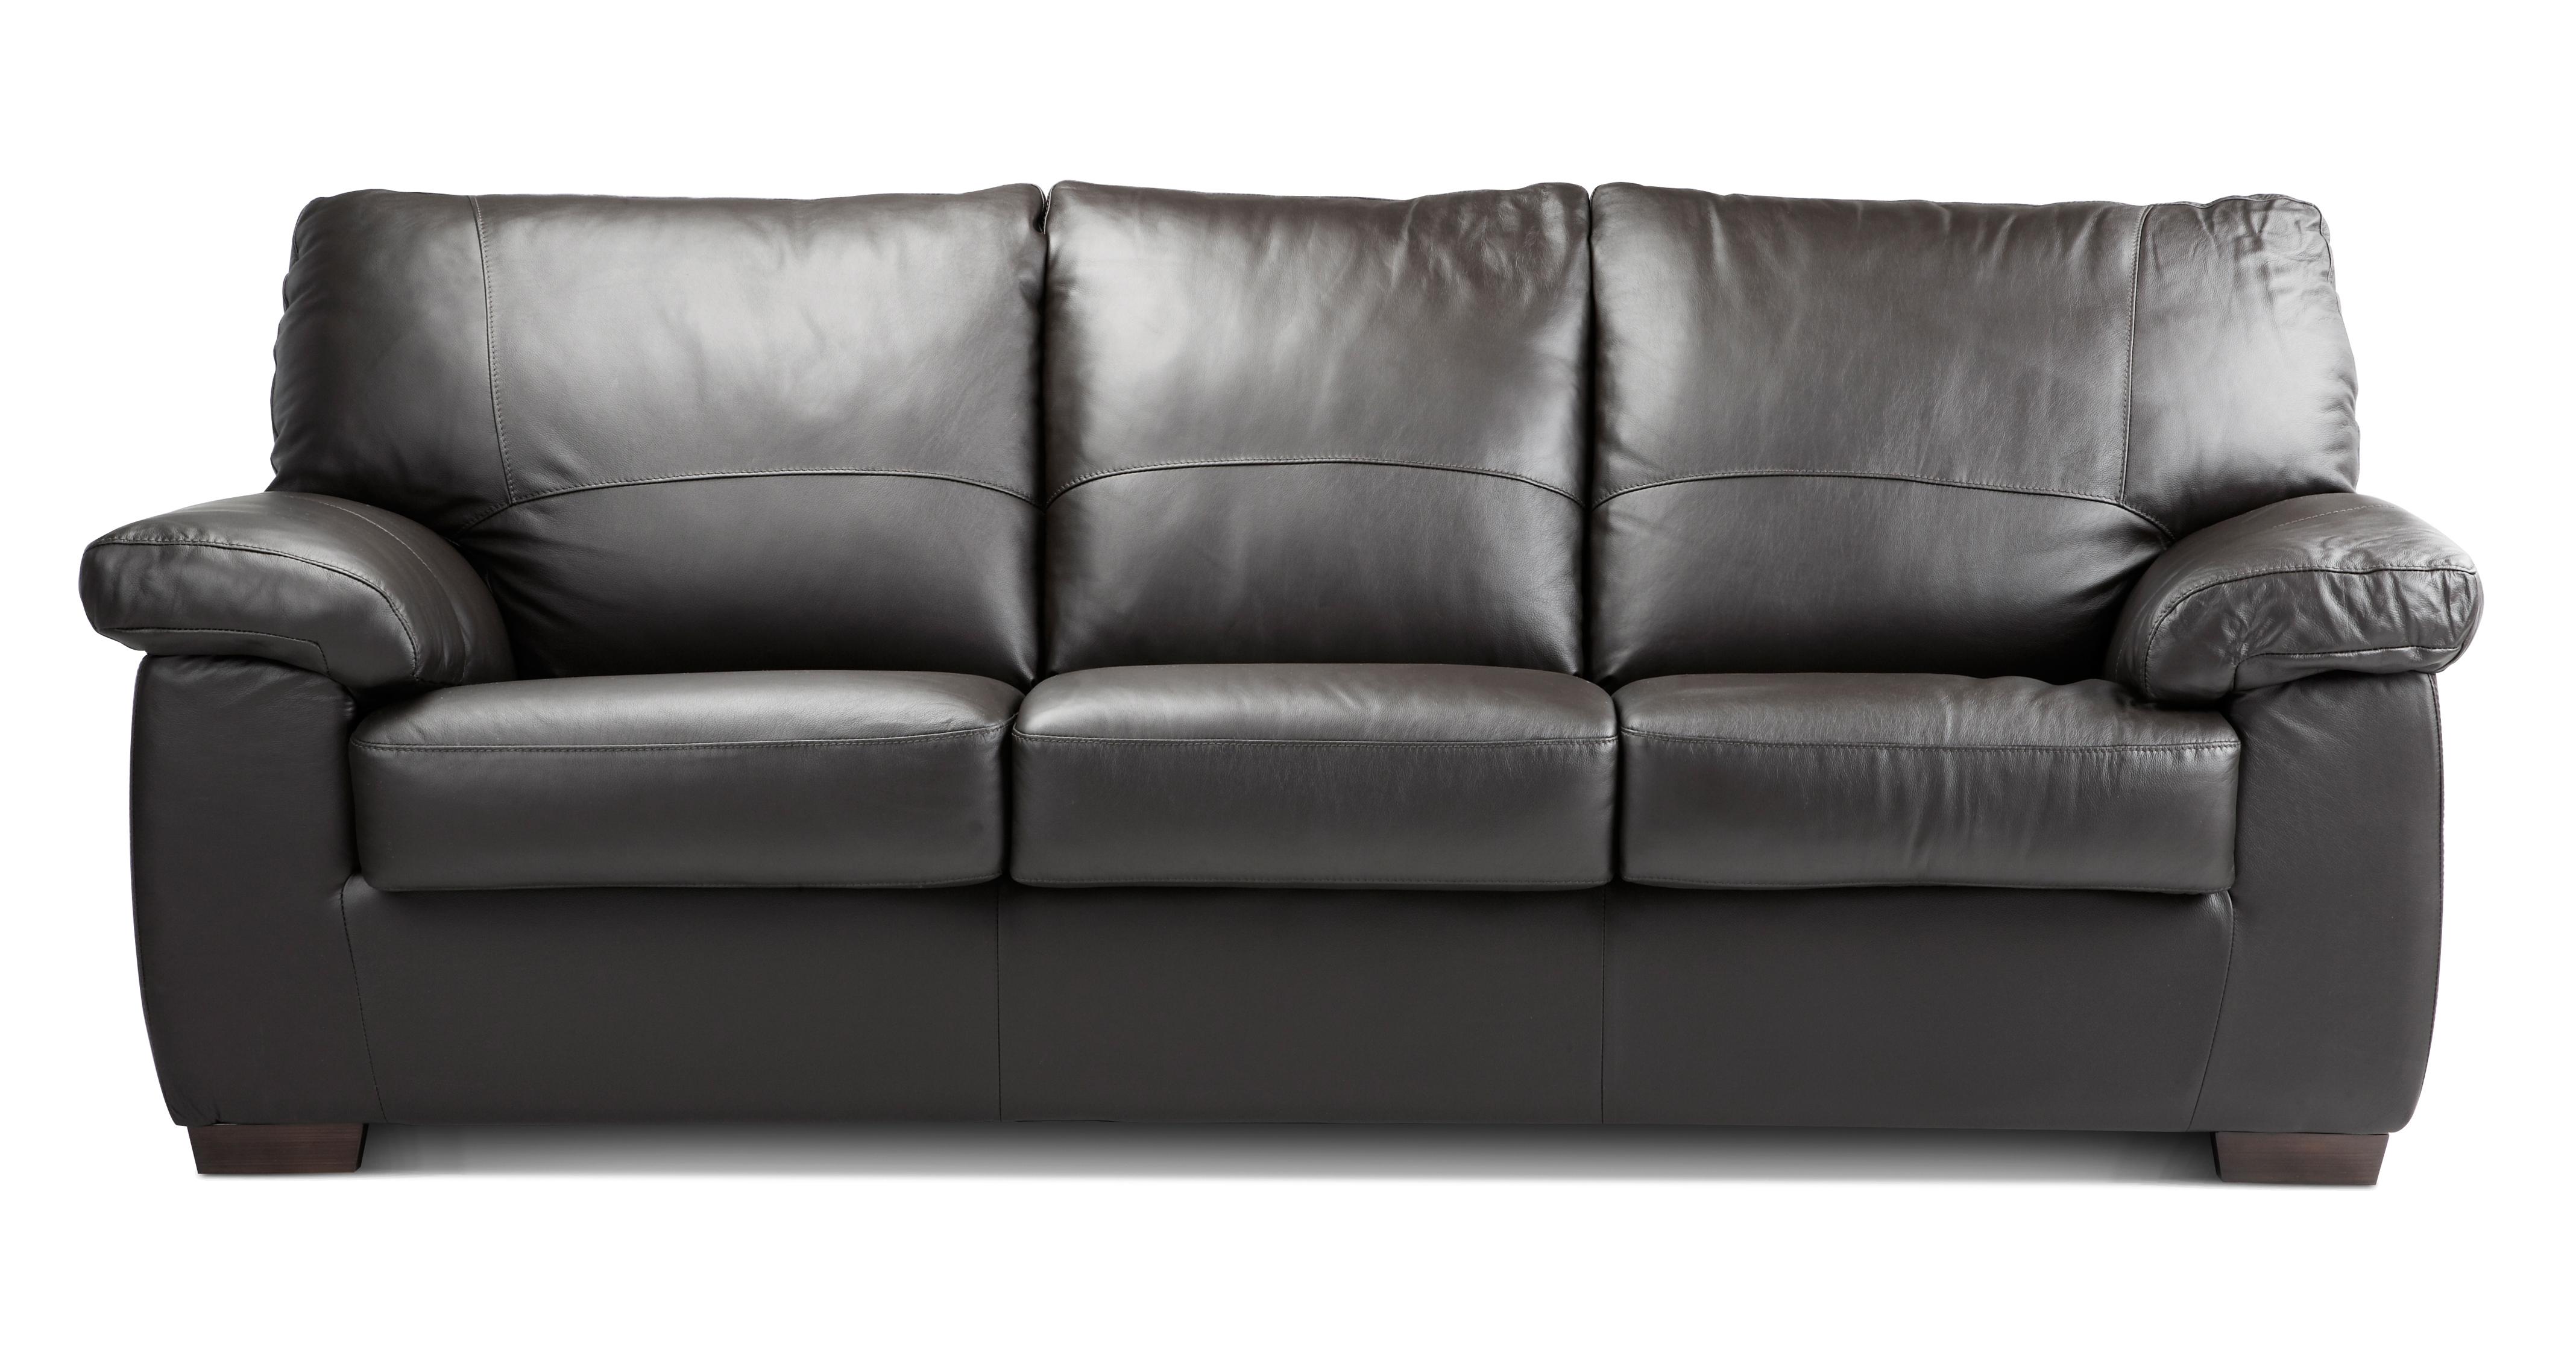 3 seater sofa bed argos